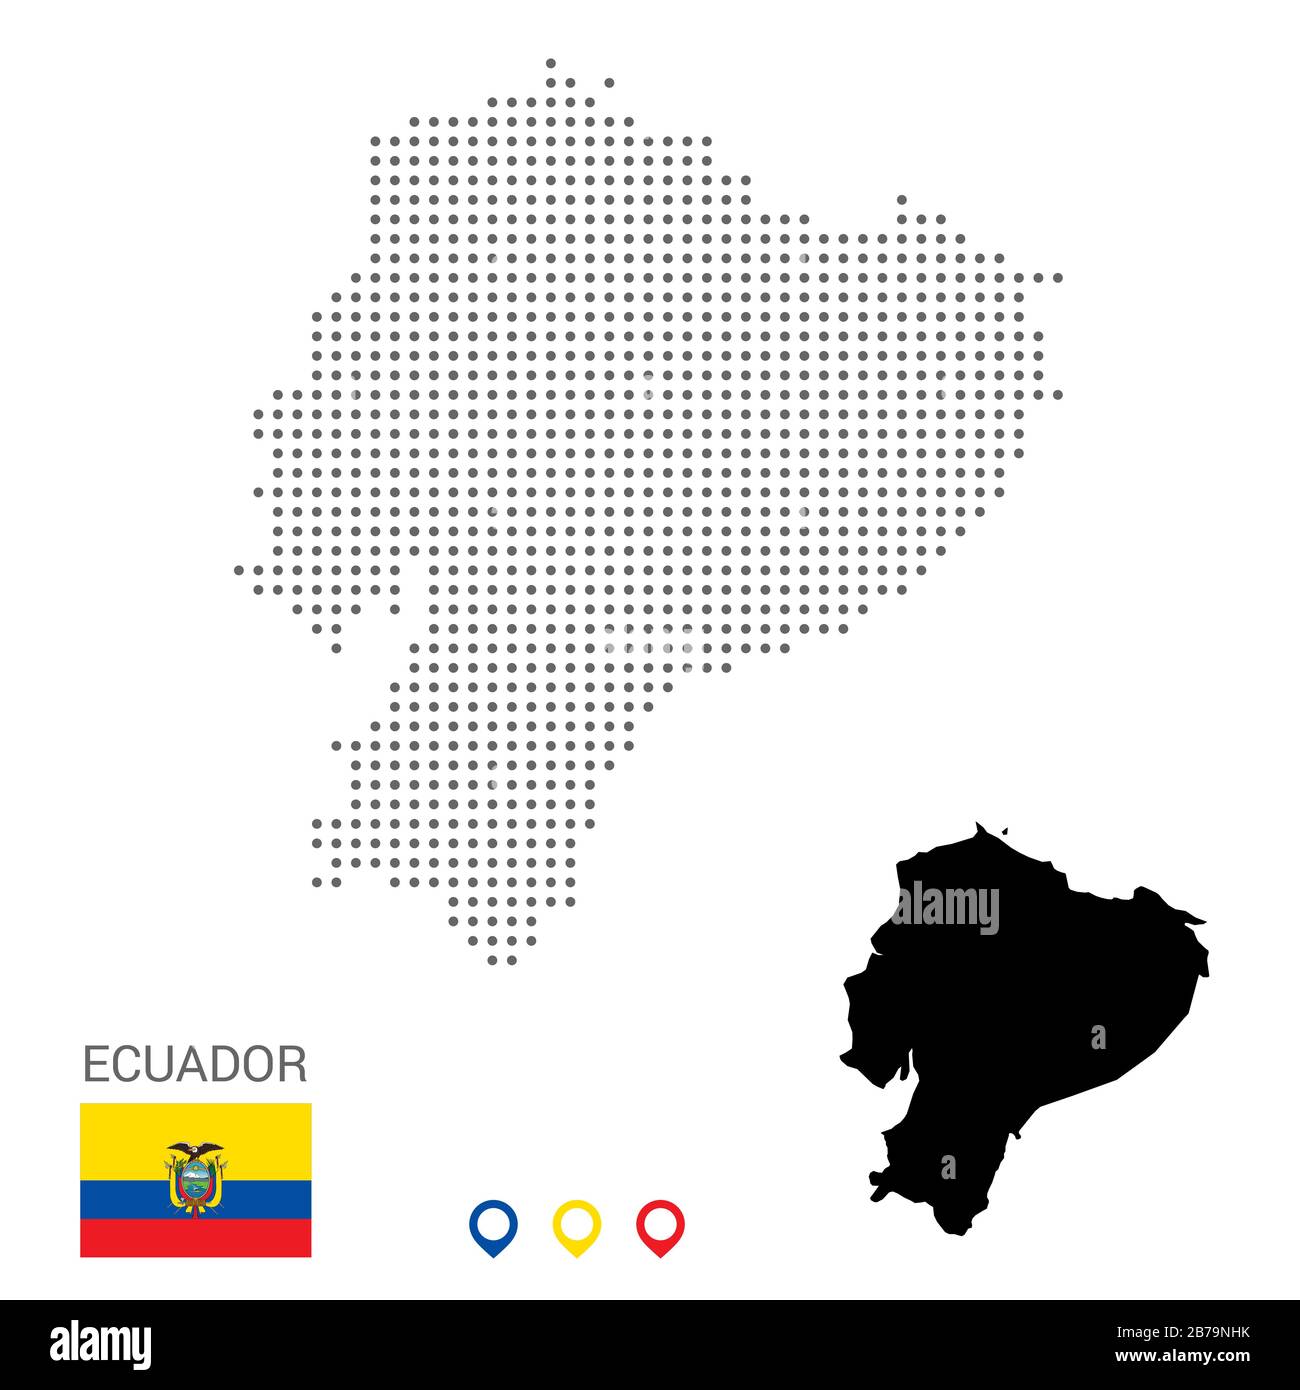 Mappa vettoriale punteggiata dell'Ecuador. Macchie grigie rotonde. Mappa Equador con bandiera nazionale e icone mappa. Silhouette nera Illustrazione Vettoriale